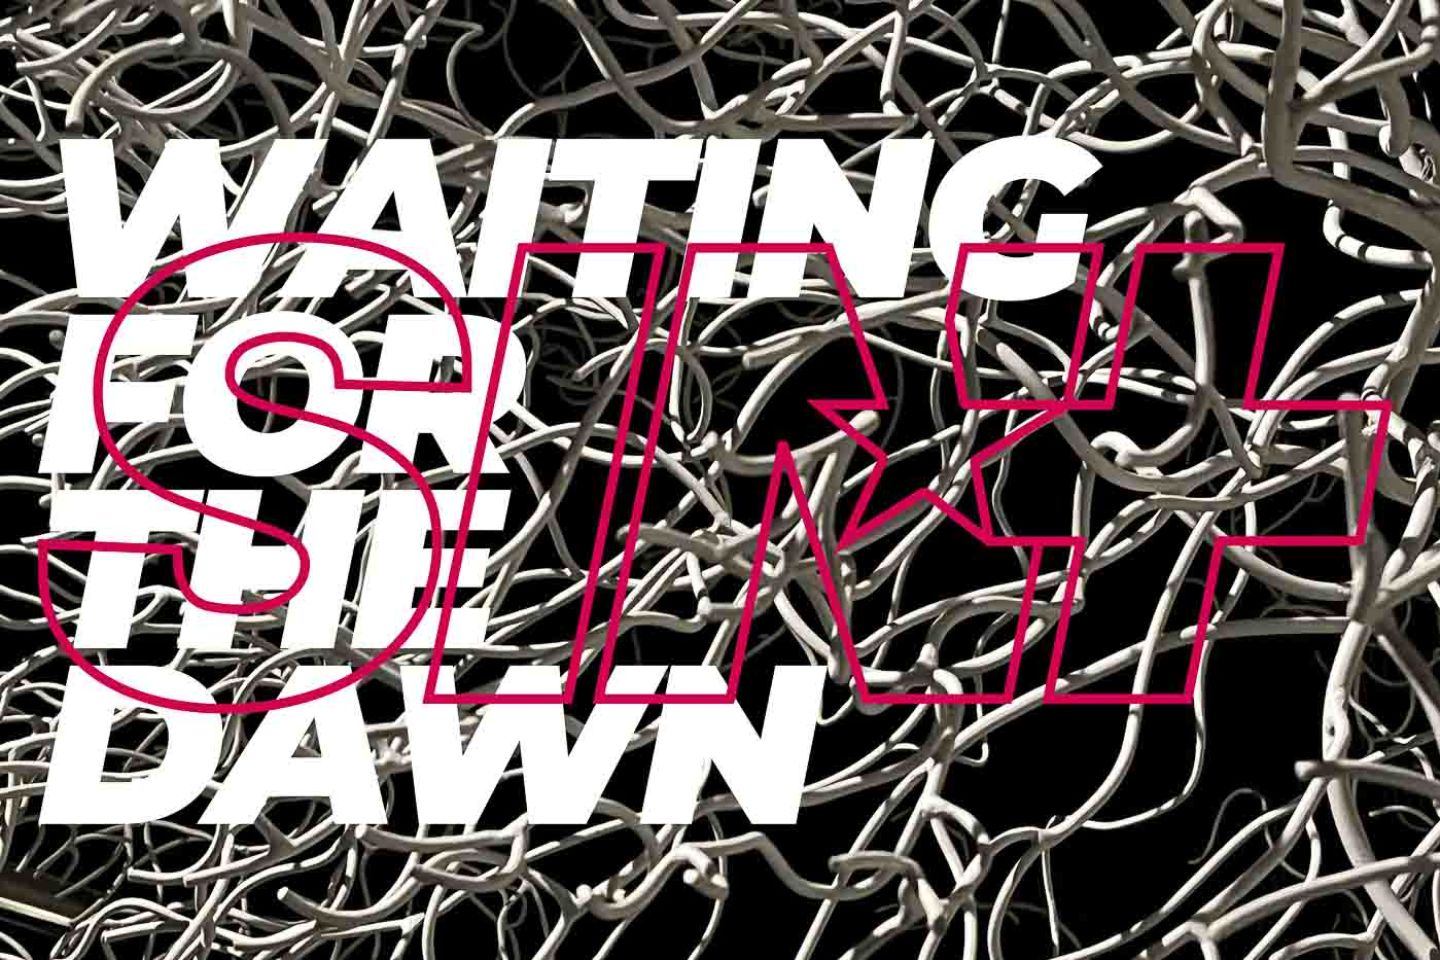 Sinplus “Waiting for the Dawn” (Dream Loud Entertainment via AWAL, 2022)